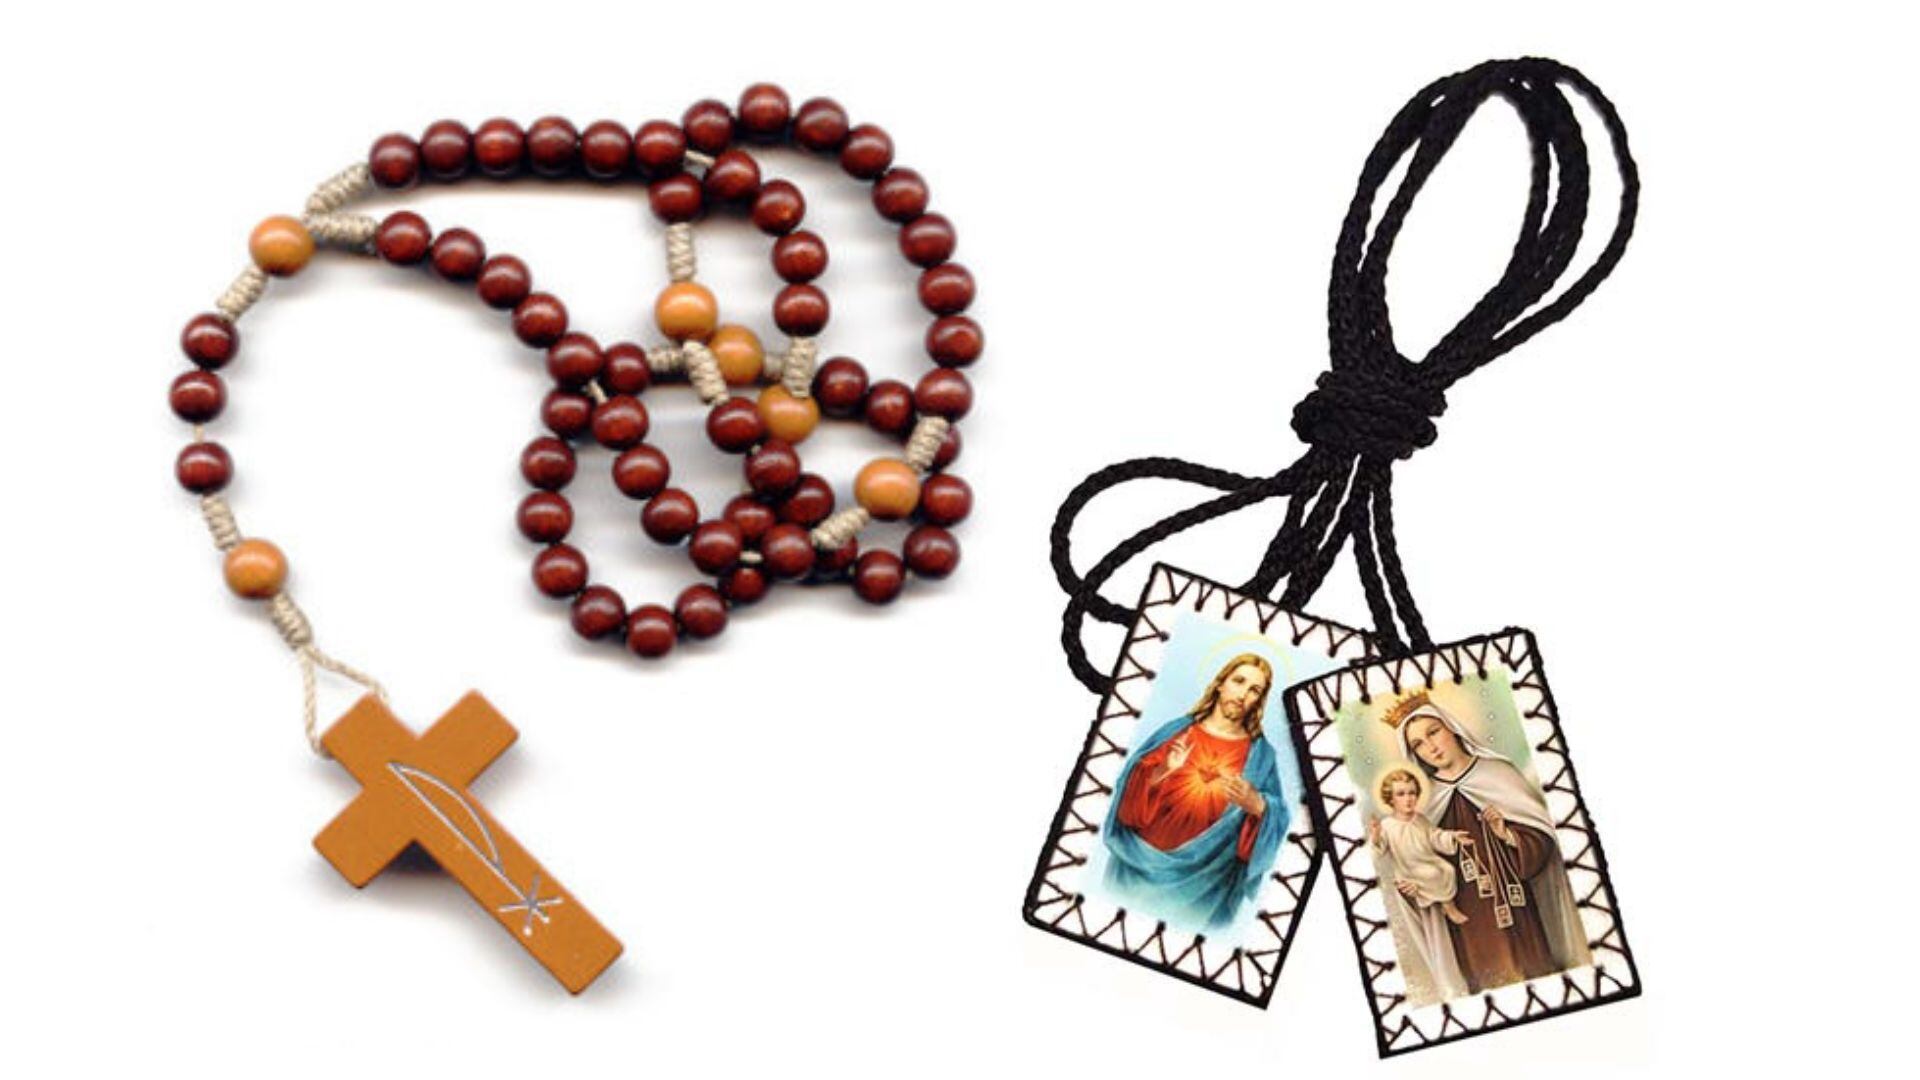 Los escapularios y camándulas son dos objetos que los fieles católicos acostumbran llevar colgados en el cuello - crédito Parroquia El Divino Pastor y VII Sacramentos